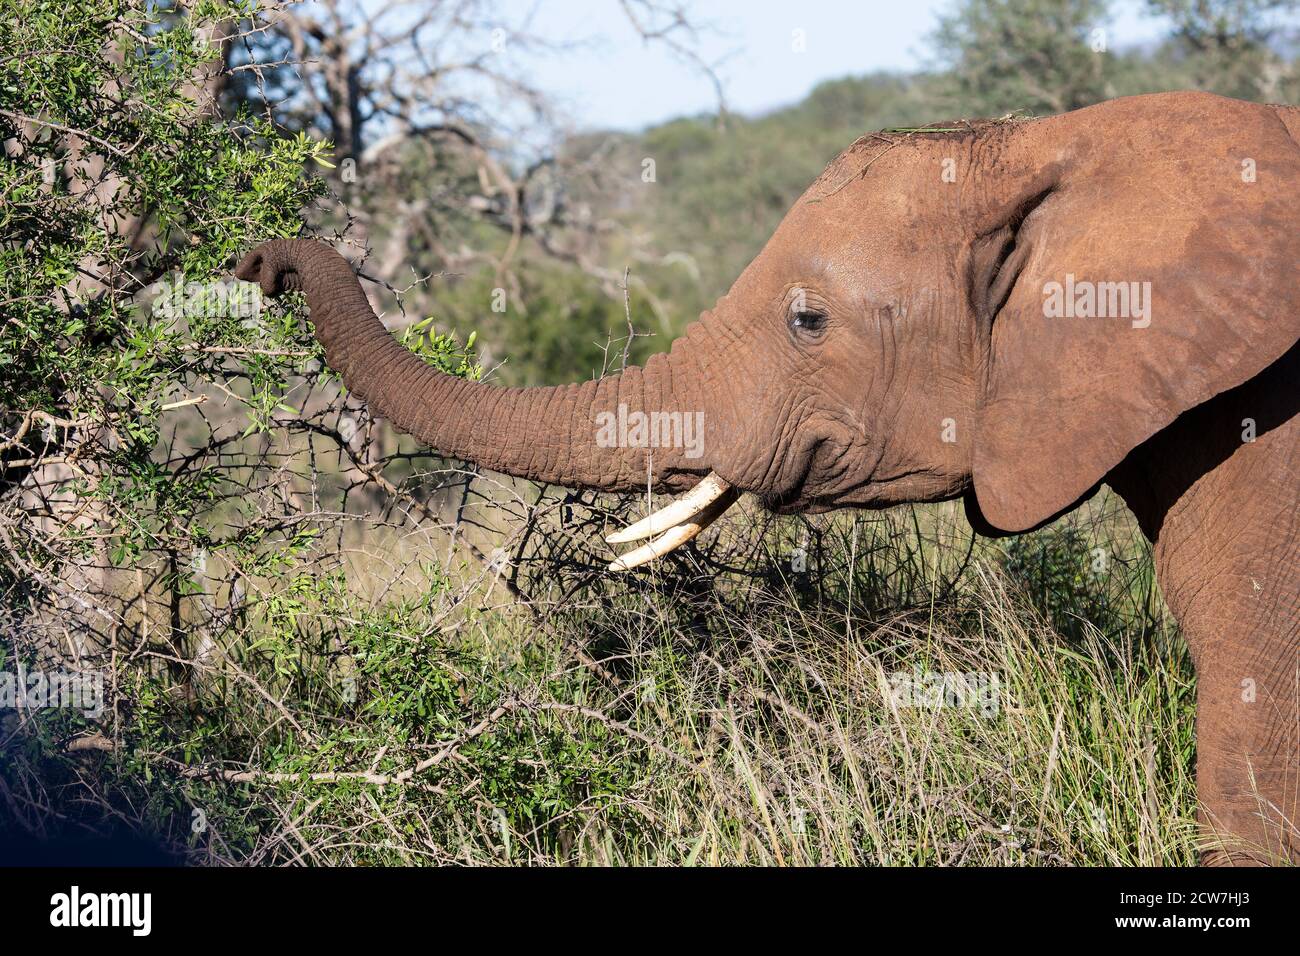 Großer erwachsener afrikanischer Elefant Loxodonta africana Kopf- und Schulterprofil, der Vegetation von einem Baum mit seinem Stamm in der Savanne sammelt Stockfoto